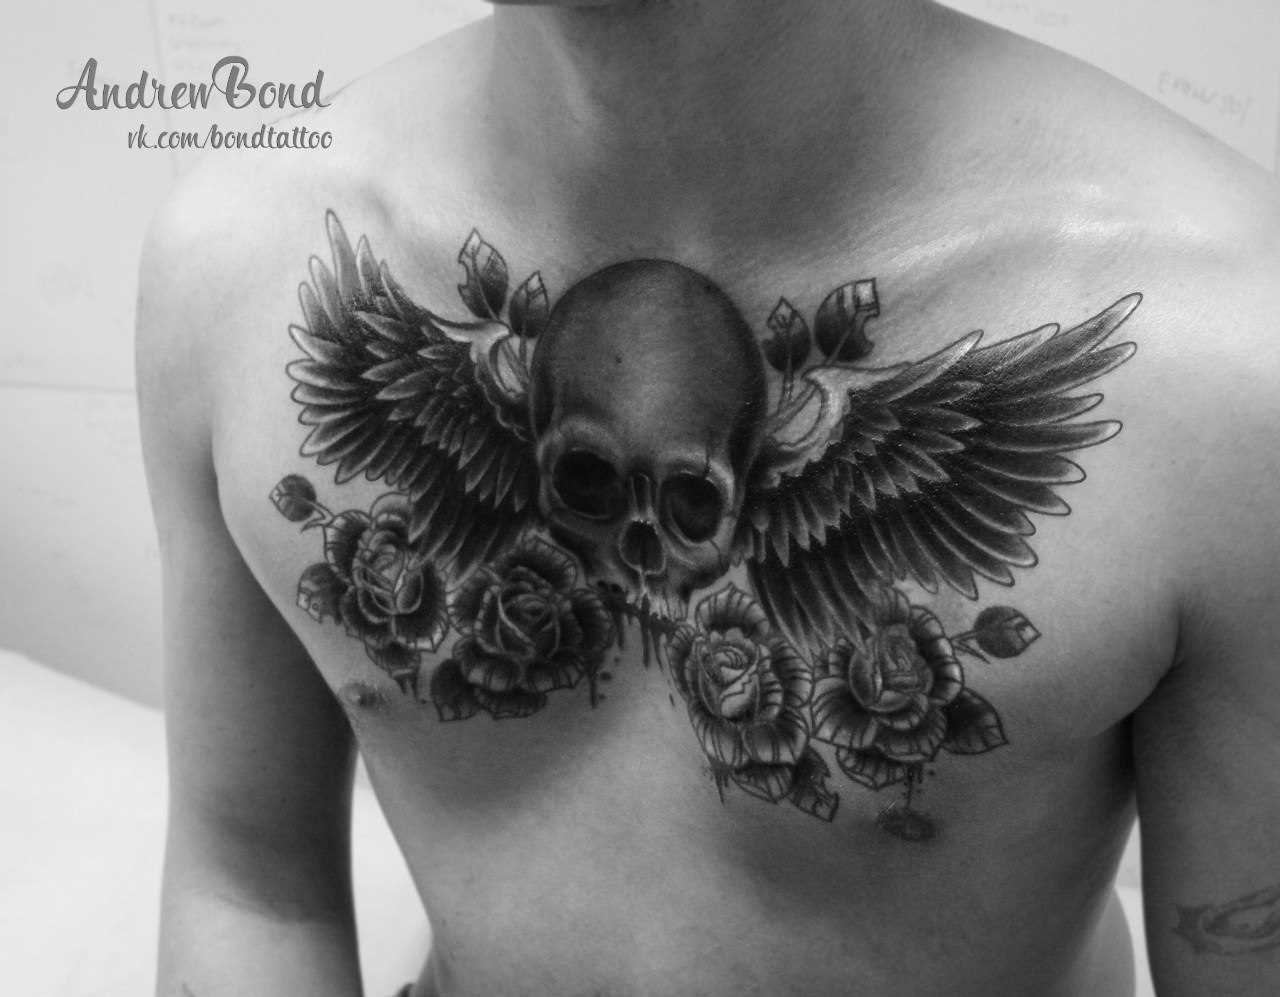 A tatuagem no peito do cara de crânio e rosas